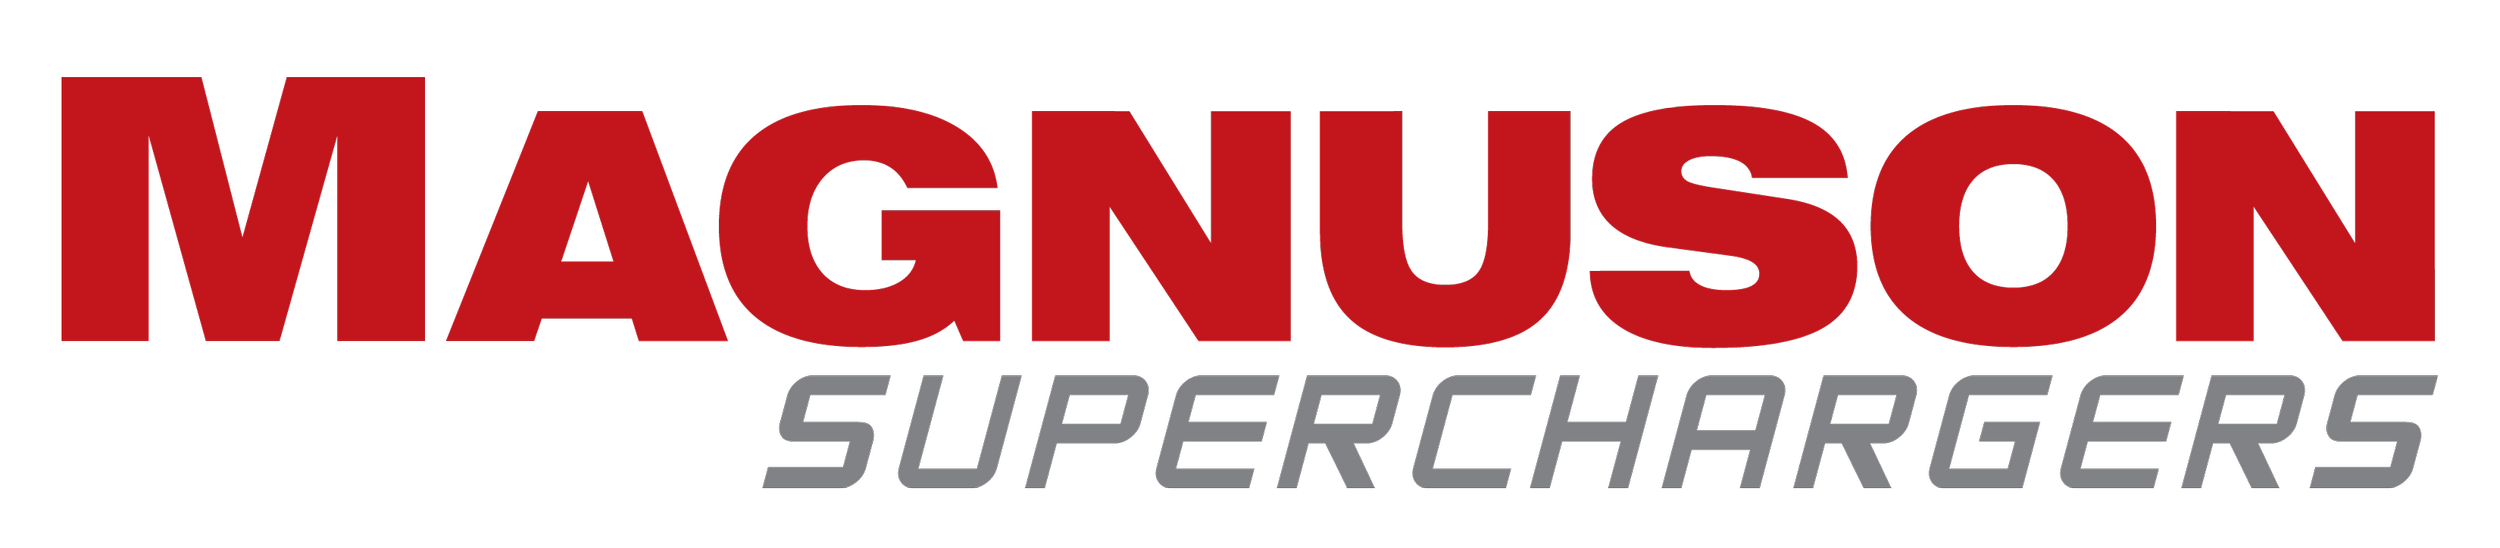 Magnuson Supercharger logo.png